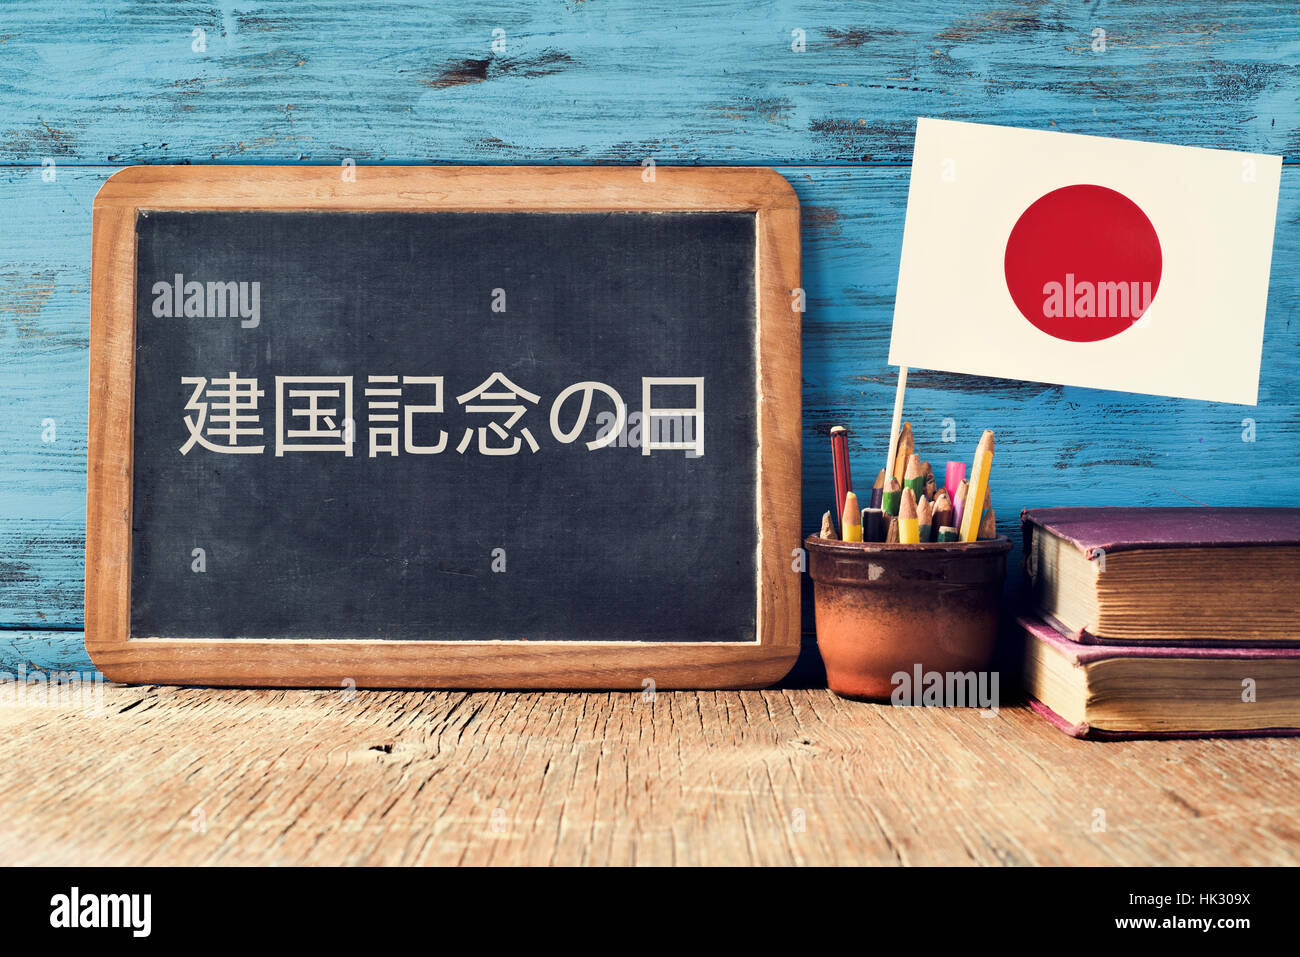 eine Tafel mit dem Text National Foundation Day in Japanisch, einen Topf mit Bleistiften, einige Bücher und die Flagge von Japan, auf einem rustikalen hölzernen Schreibtisch geschrieben Stockfoto